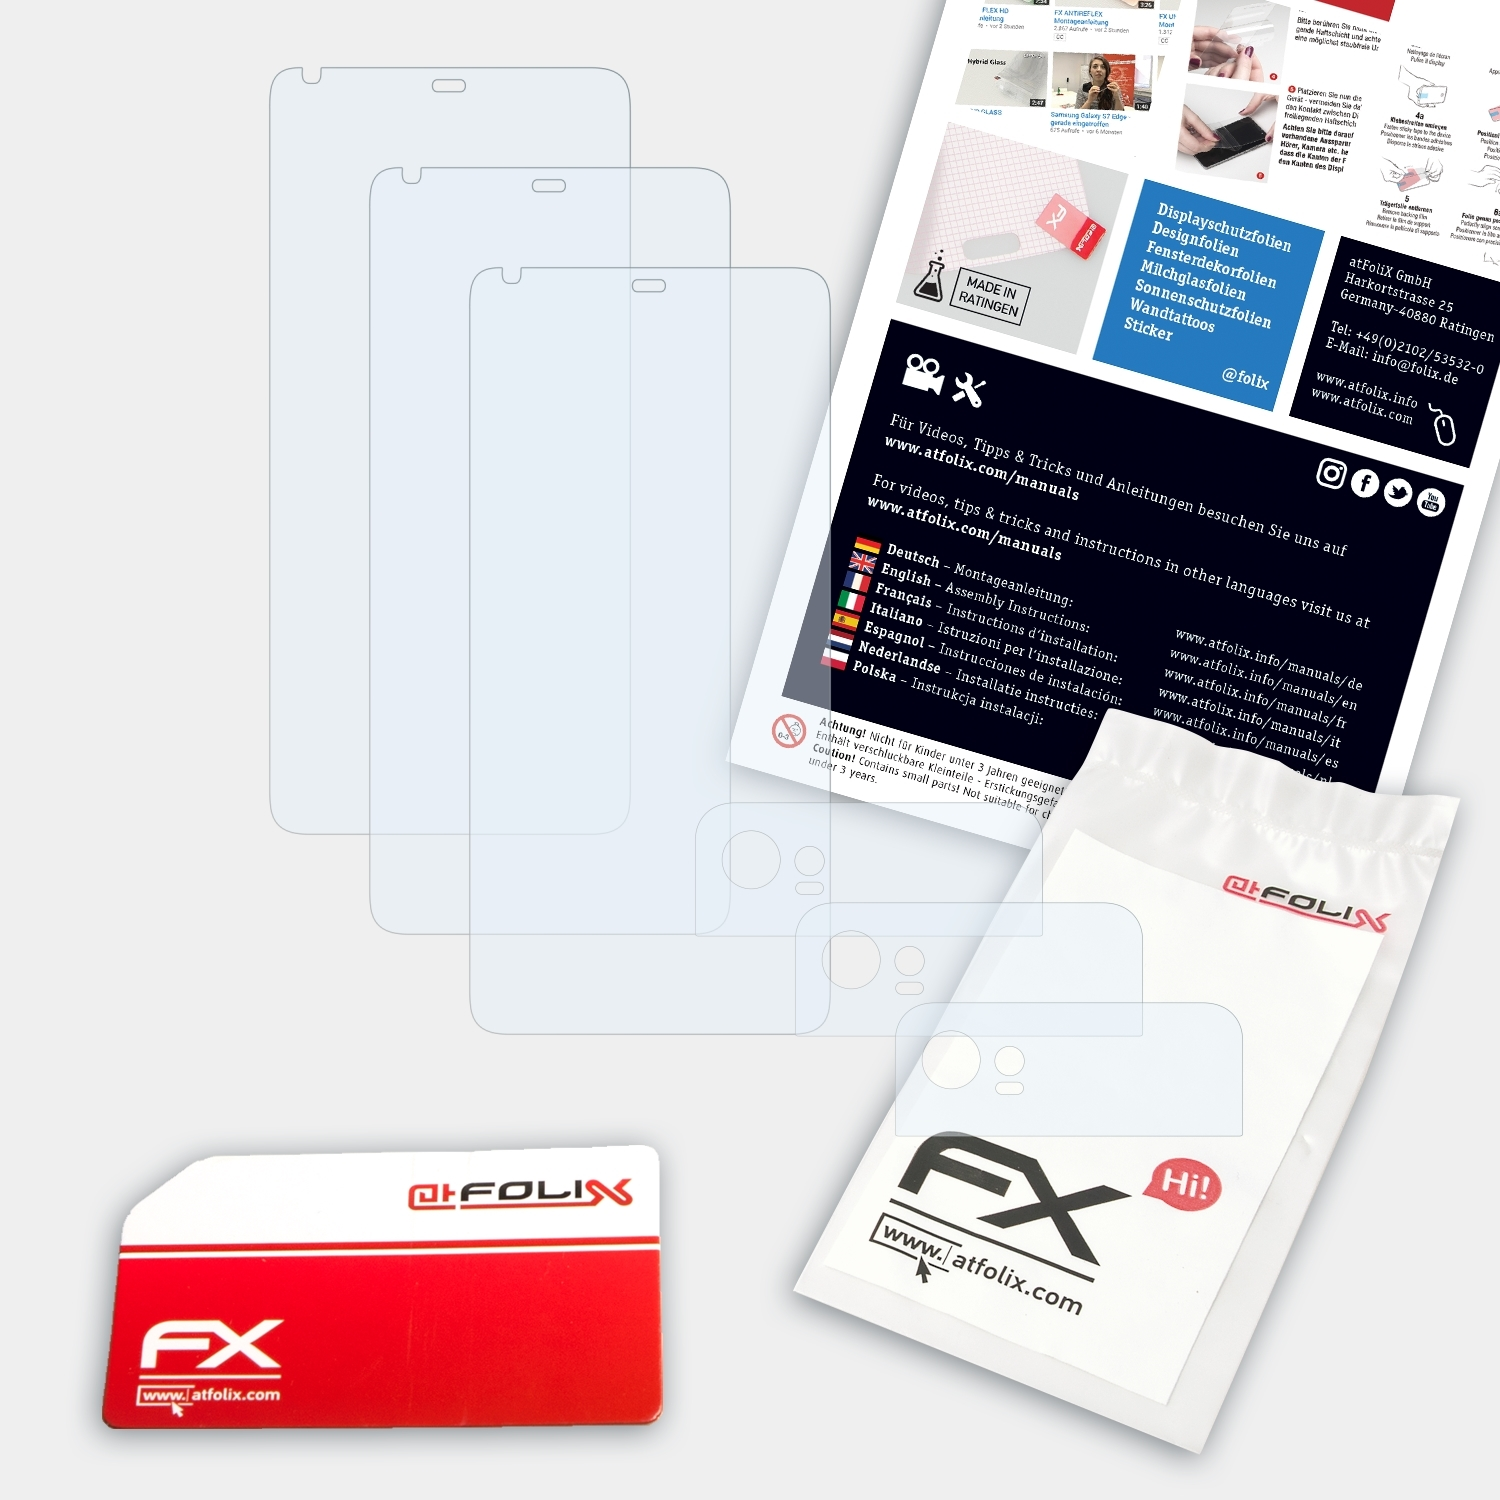 FX-Clear 3x Pixel Displayschutz(für XL) ATFOLIX Google 2